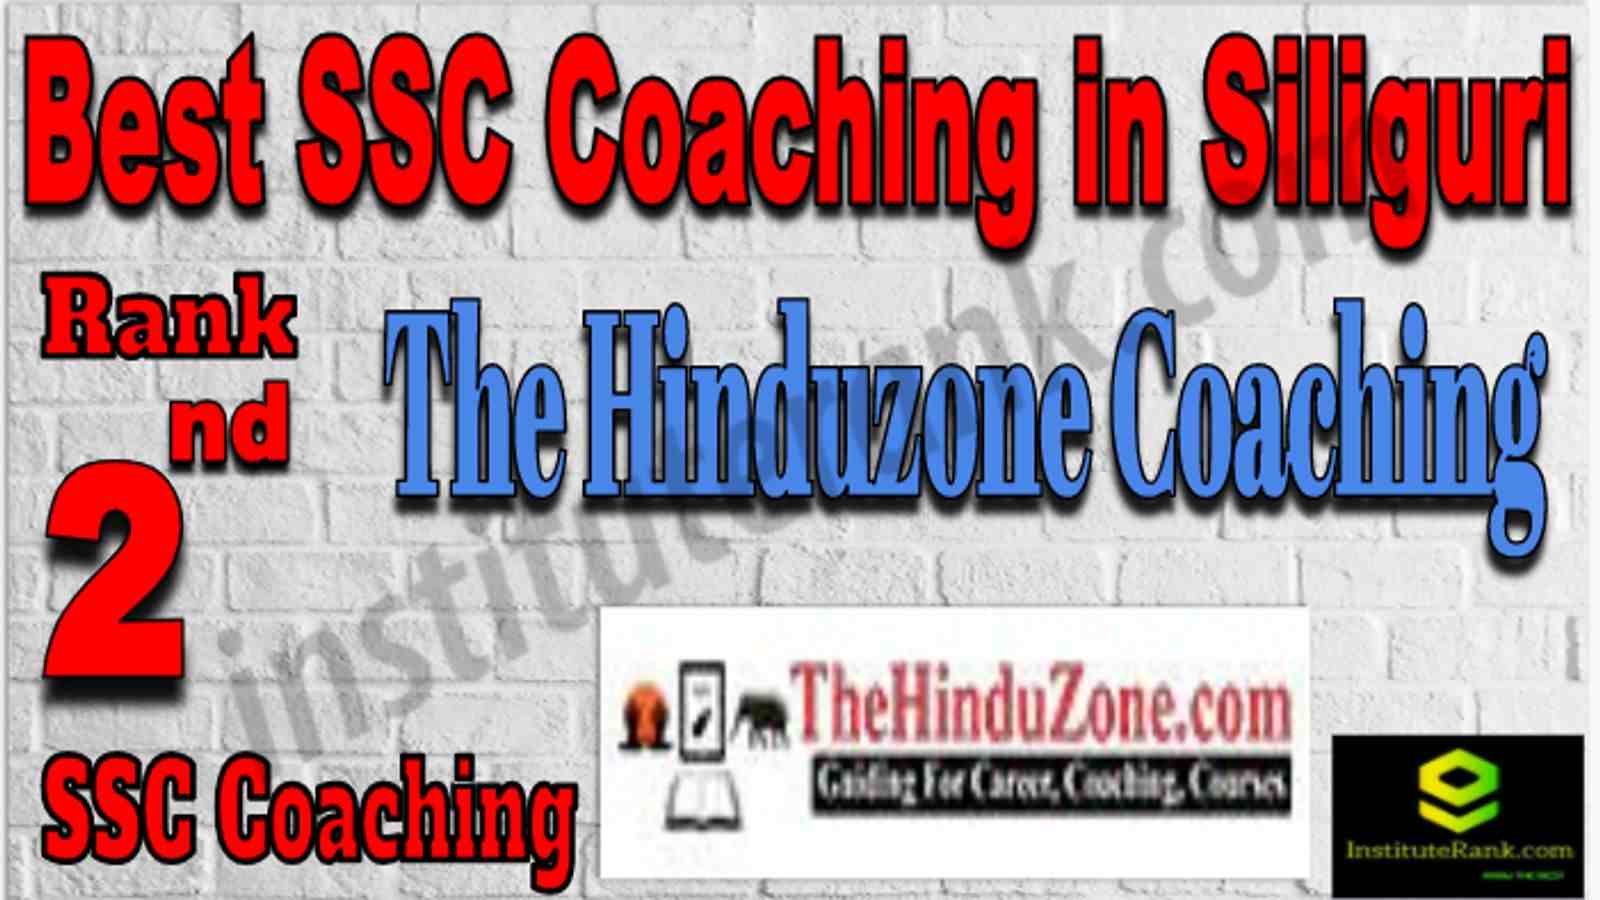 Rank 2 Best SSC Coaching in Silguri